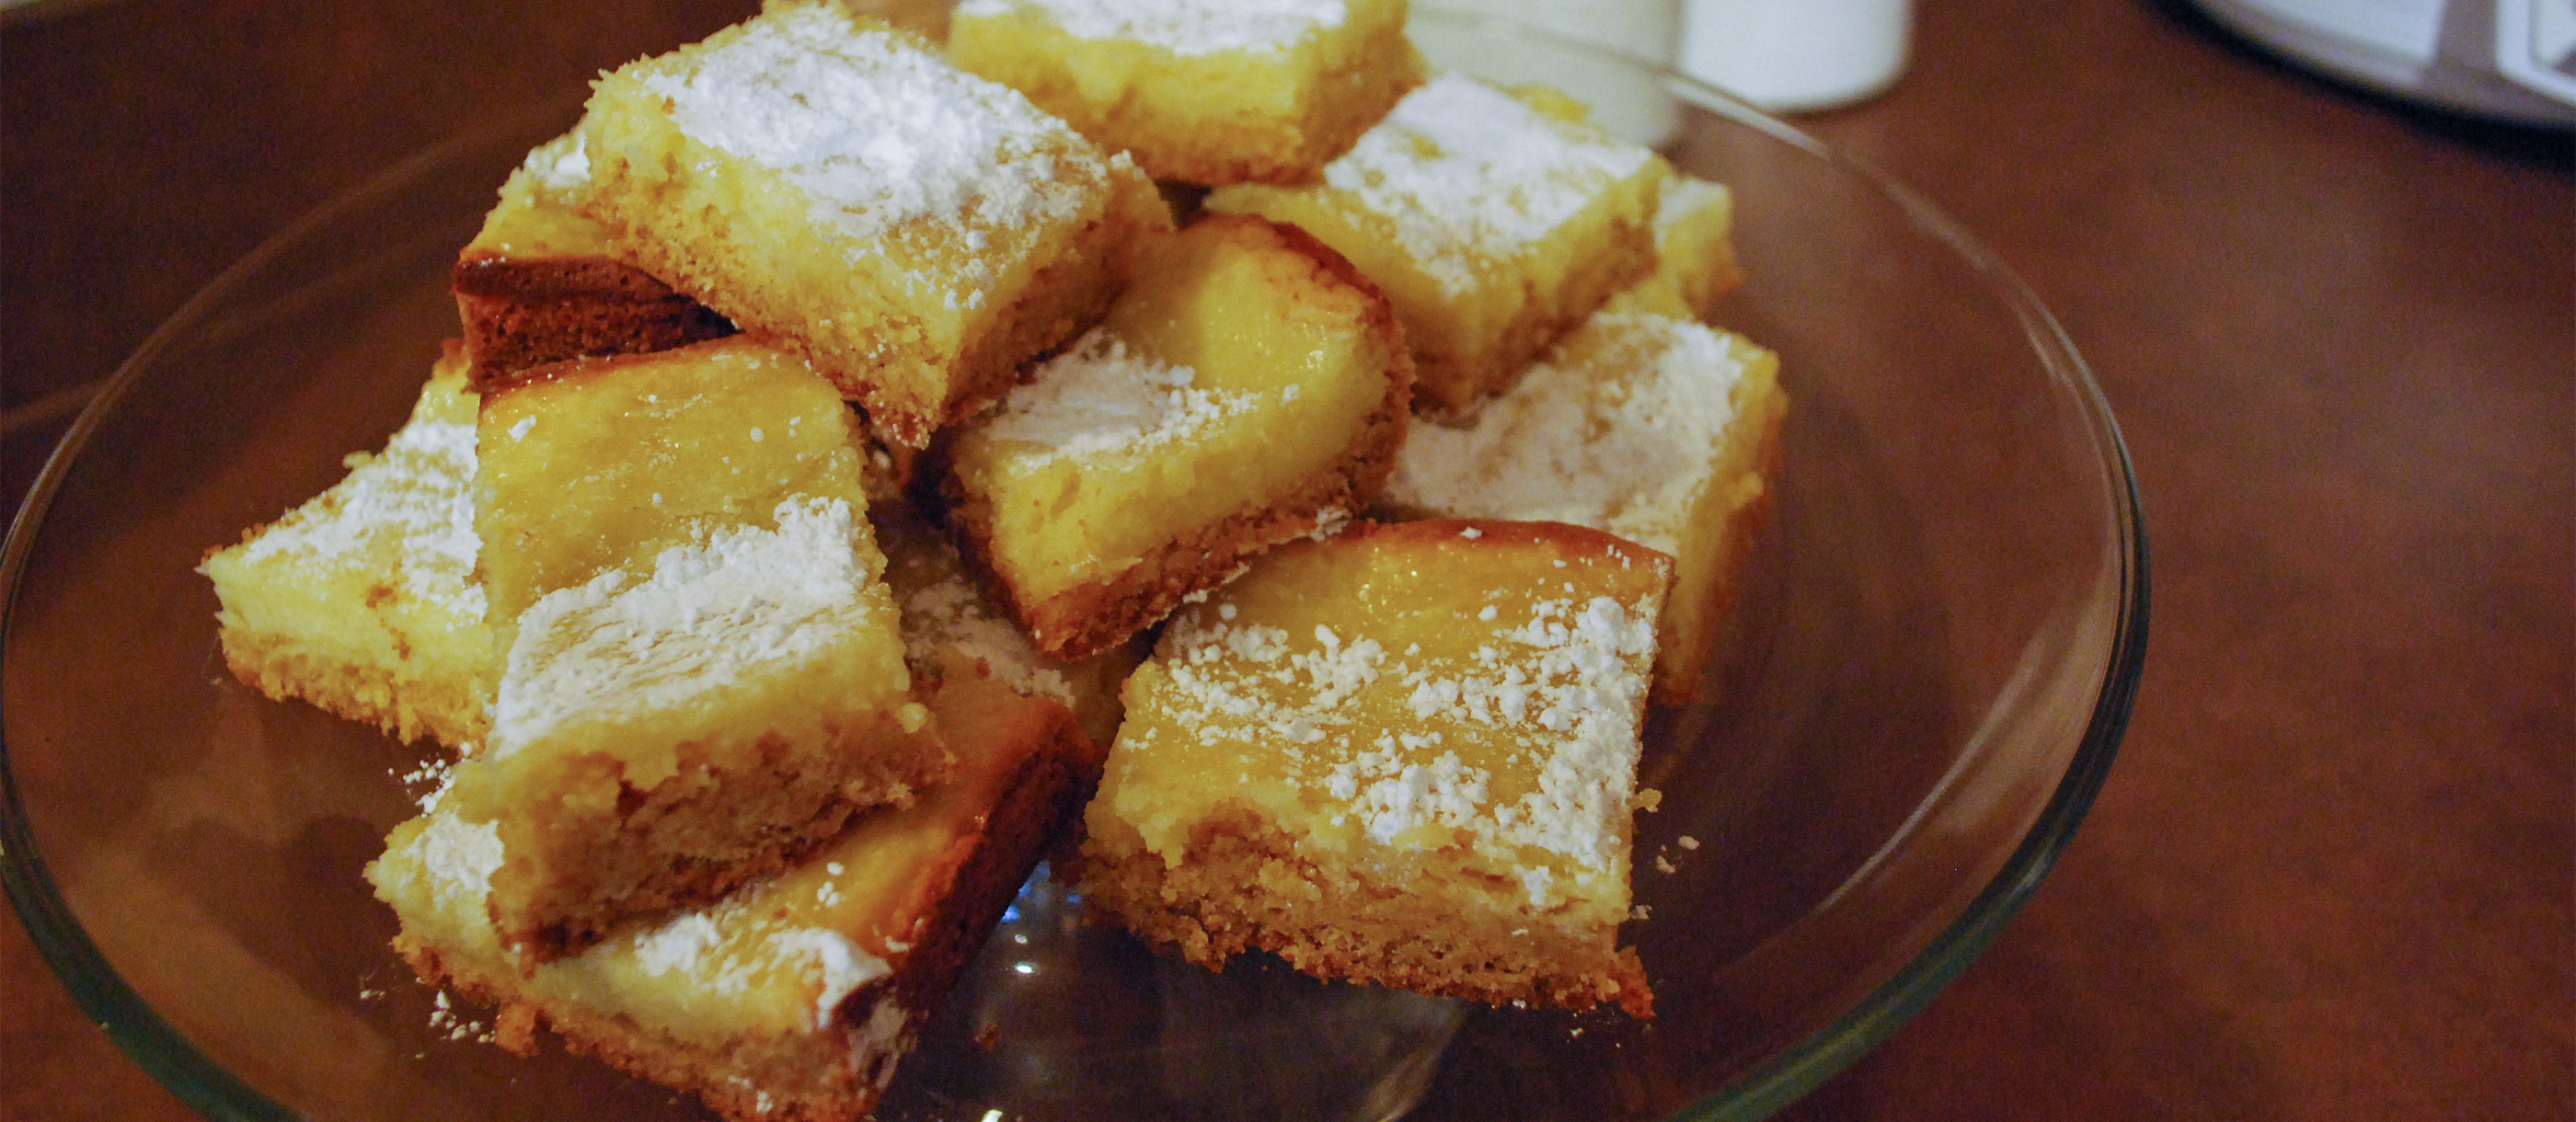 Gooey Butter Cake: St. Louis' Sinfully Sweet Secret | Layla Journey |  NewsBreak Original